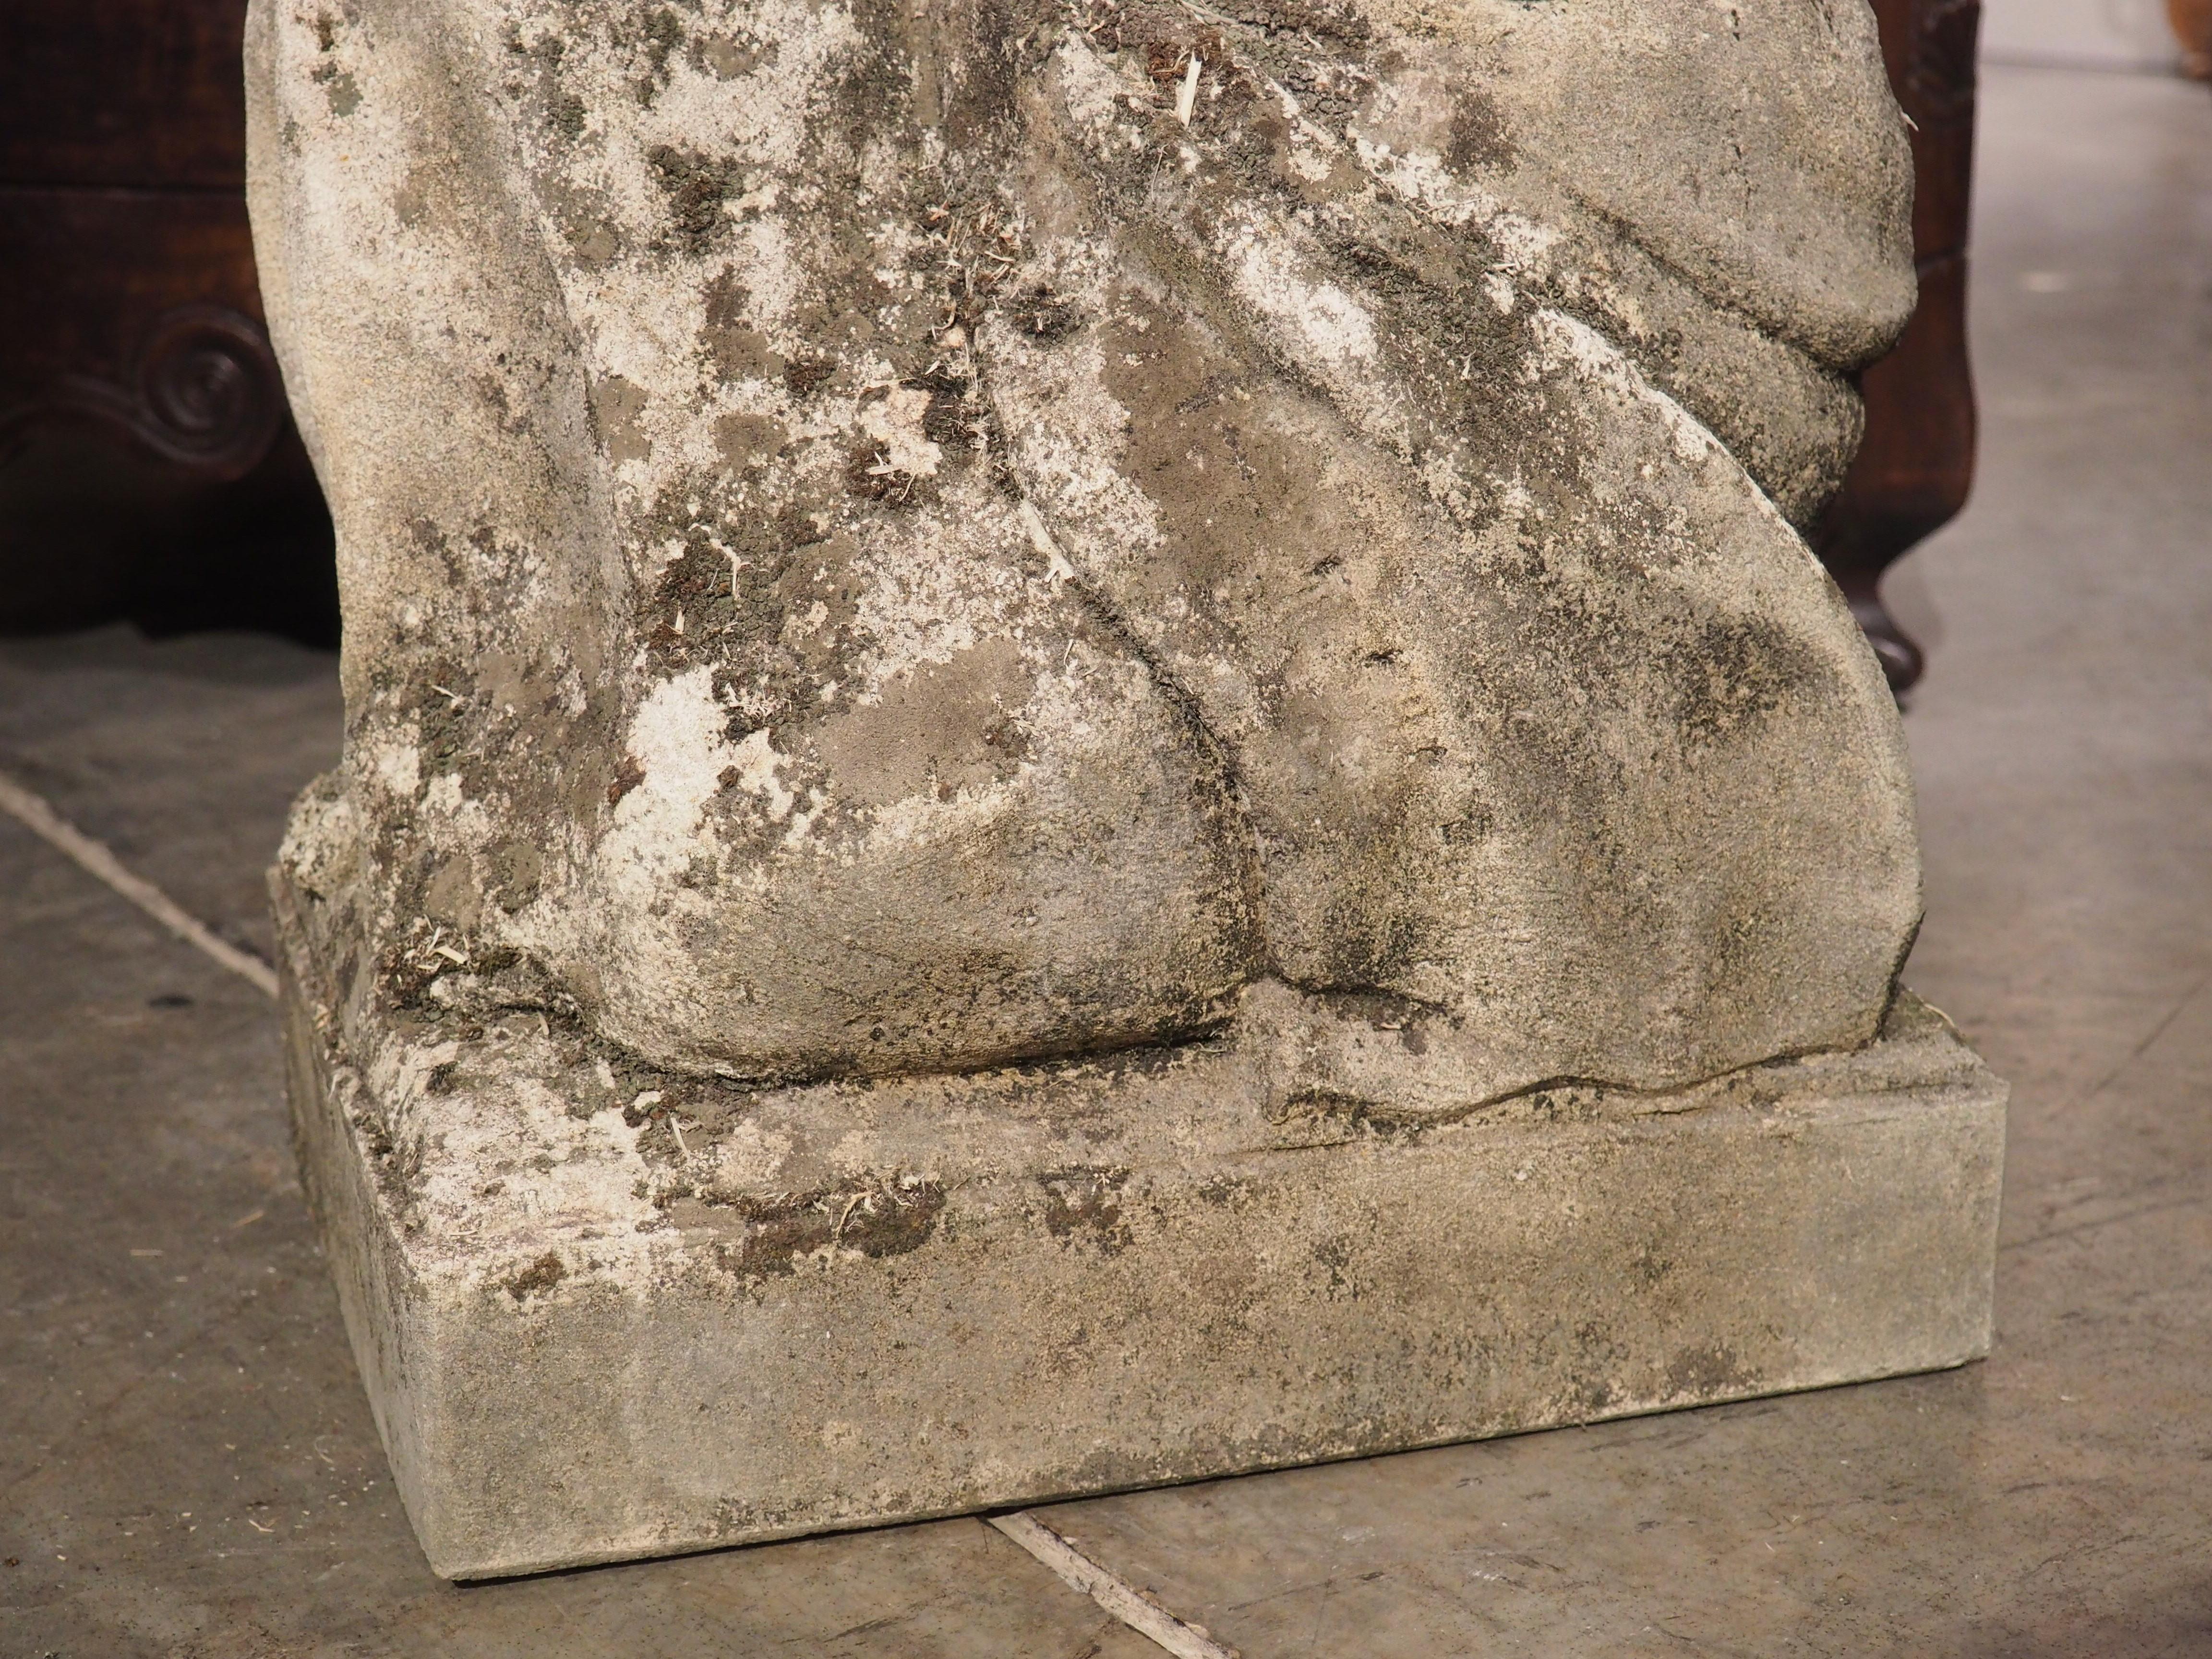 statue italienne femme